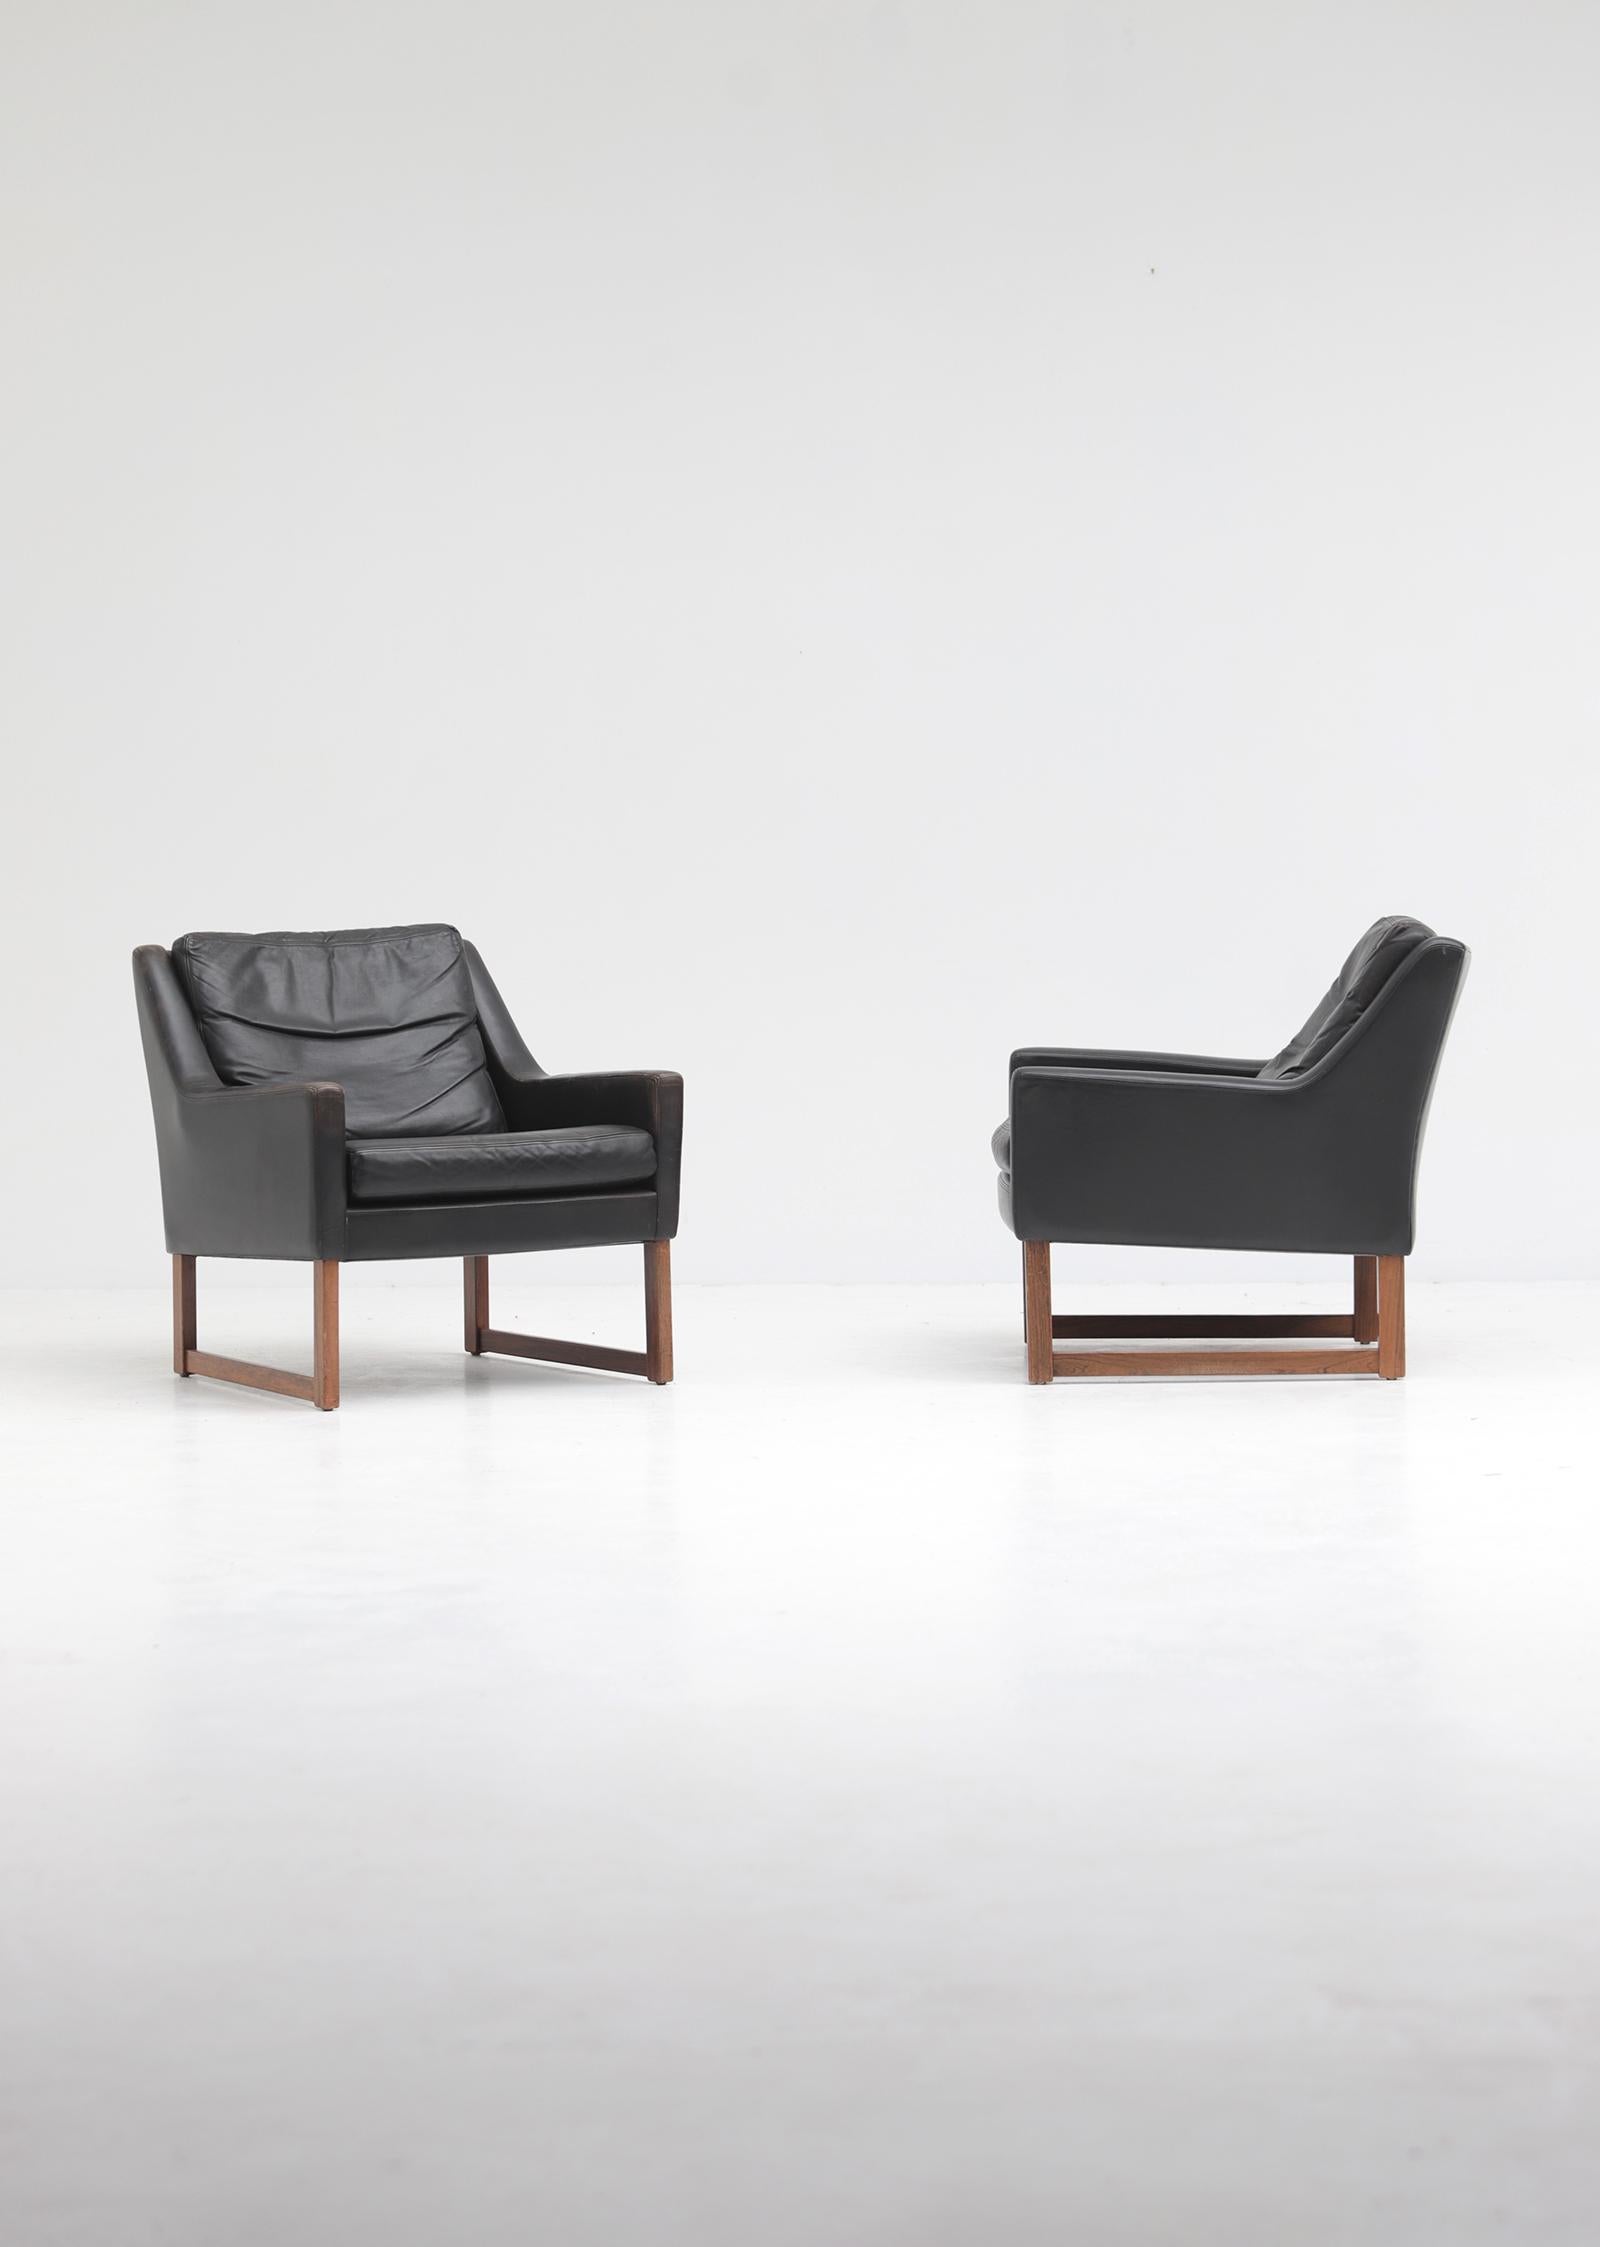 Ein Paar Ledersessel, entworfen in den 1960er Jahren von Rudolf Bernd Glatzel für Kill International, Deutschland. Beide Stühle haben einen Holzrahmen und sind mit schwarzem Anilinleder gepolstert. Die Stühle haben lose Kissen, die mit Federn